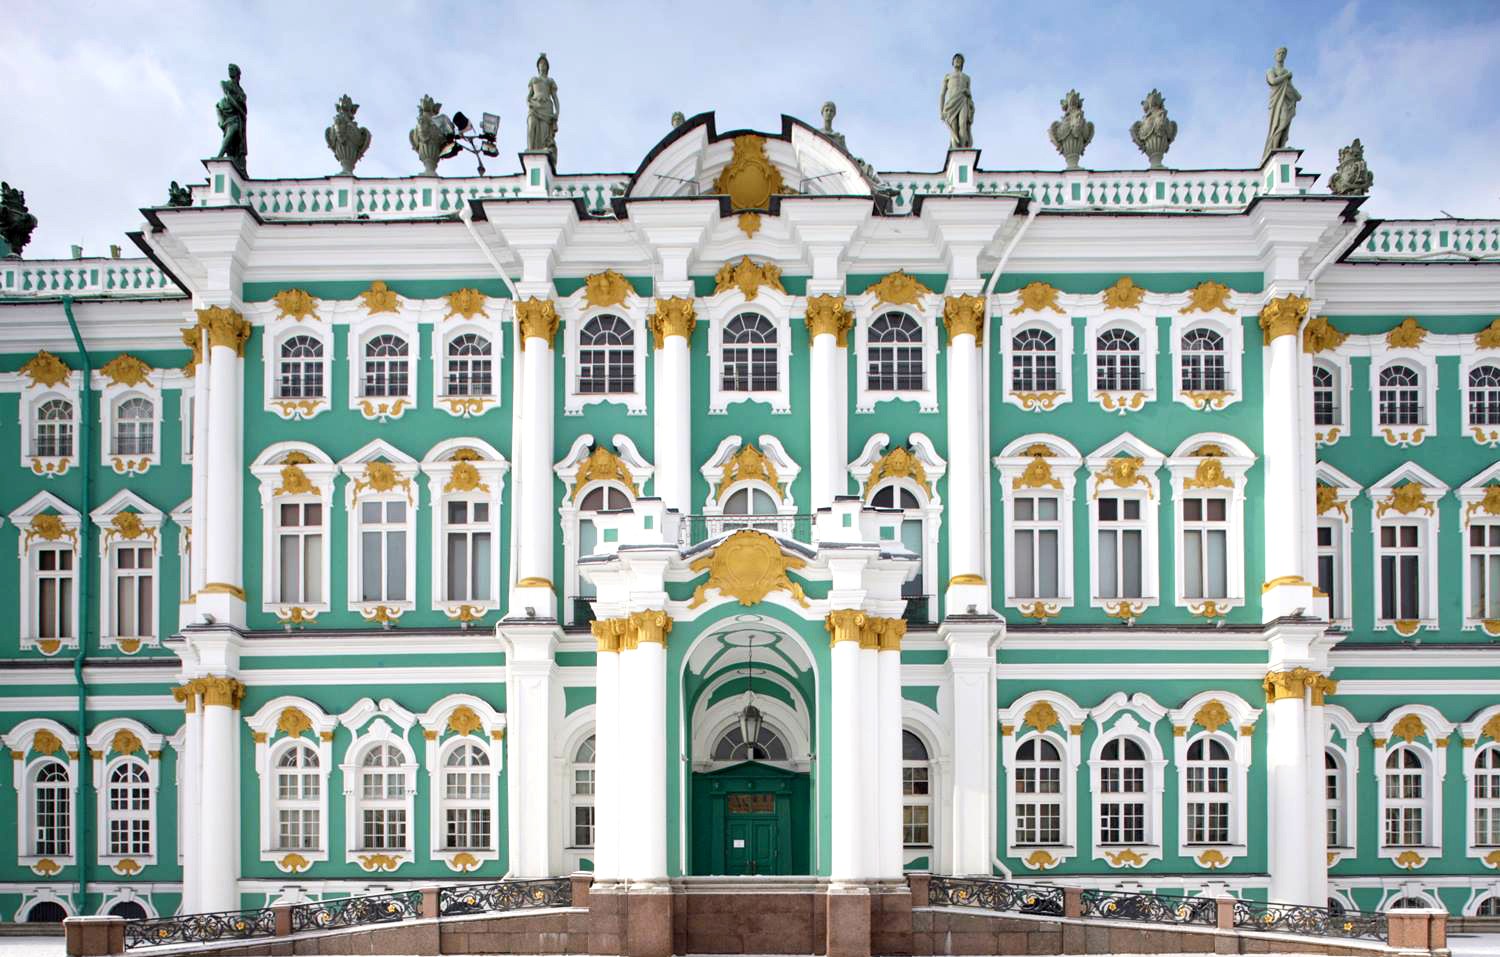 Inauguración del Hermitage de San Petersburgo 5 de febrero de 1852